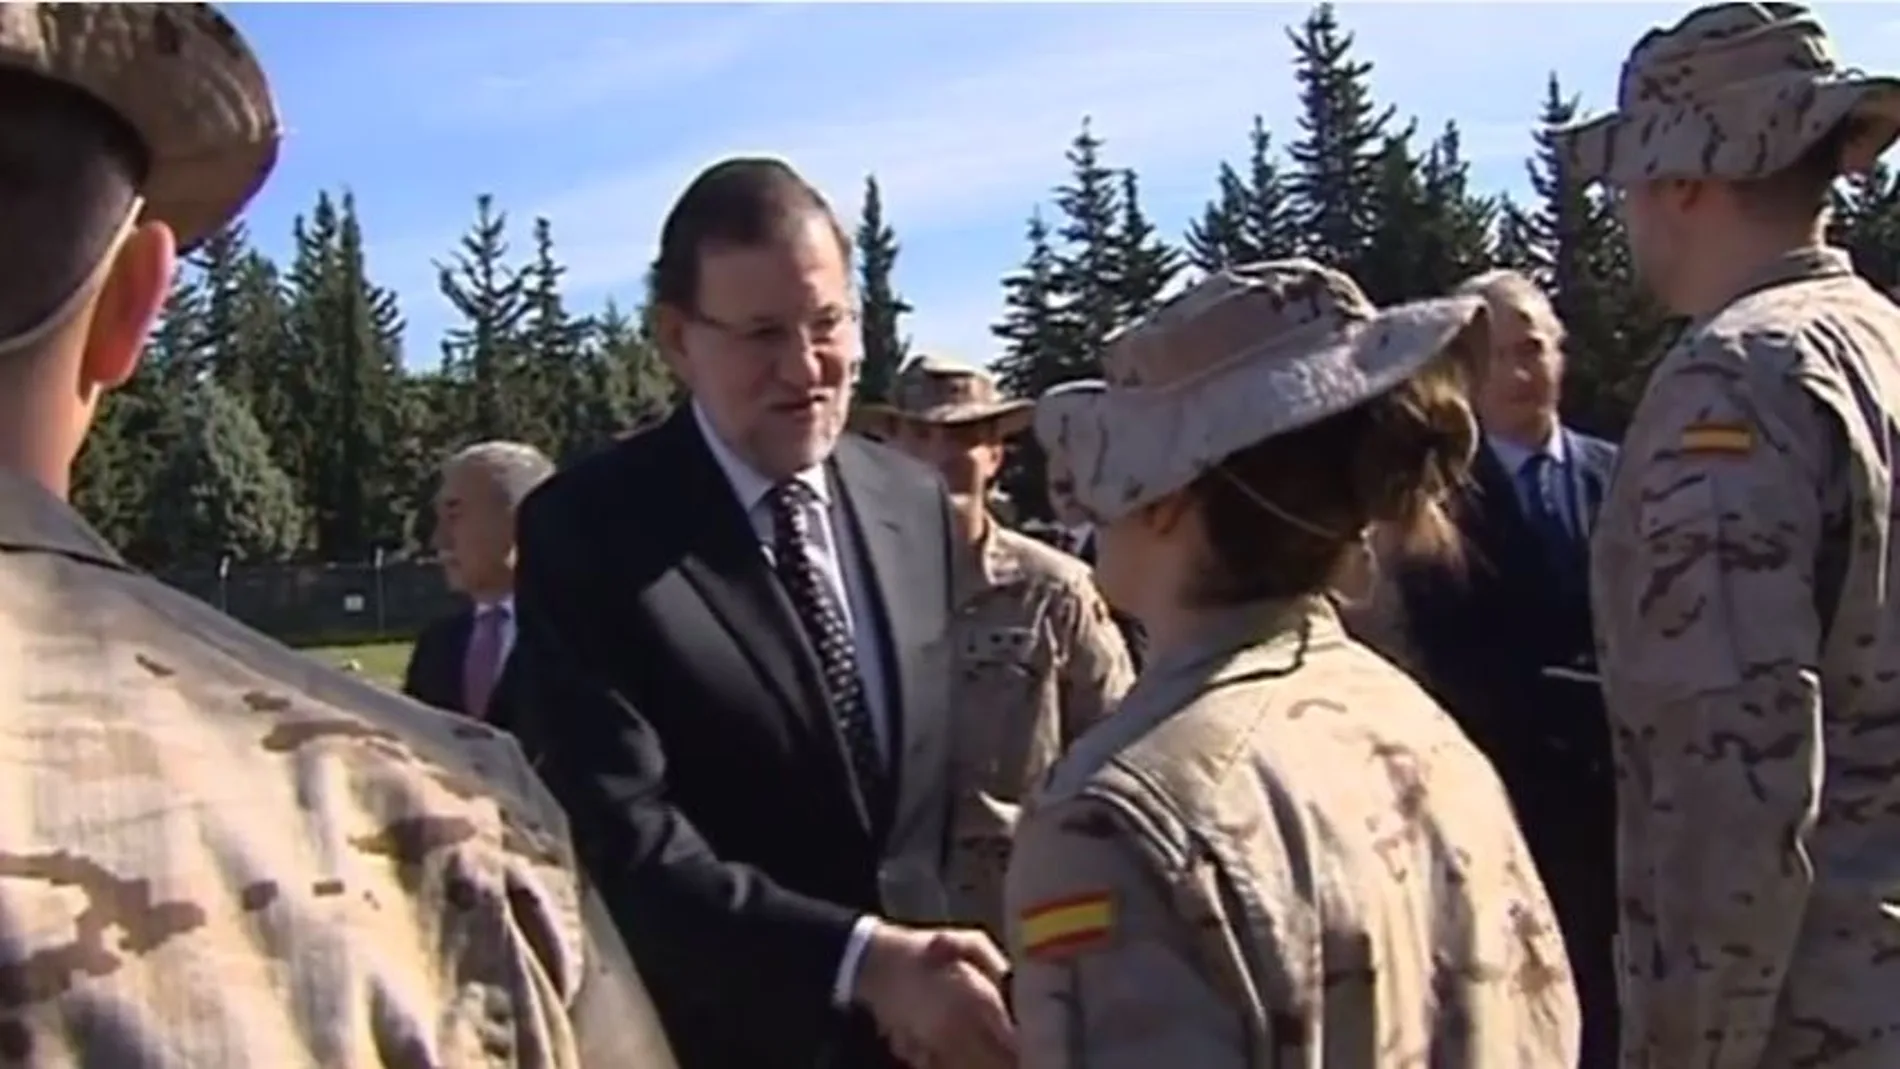 Una de las imágenes incluidas en el vídeo grabado por Mariano Rajoy en la víspera del Día de las Fuerzas Armadas